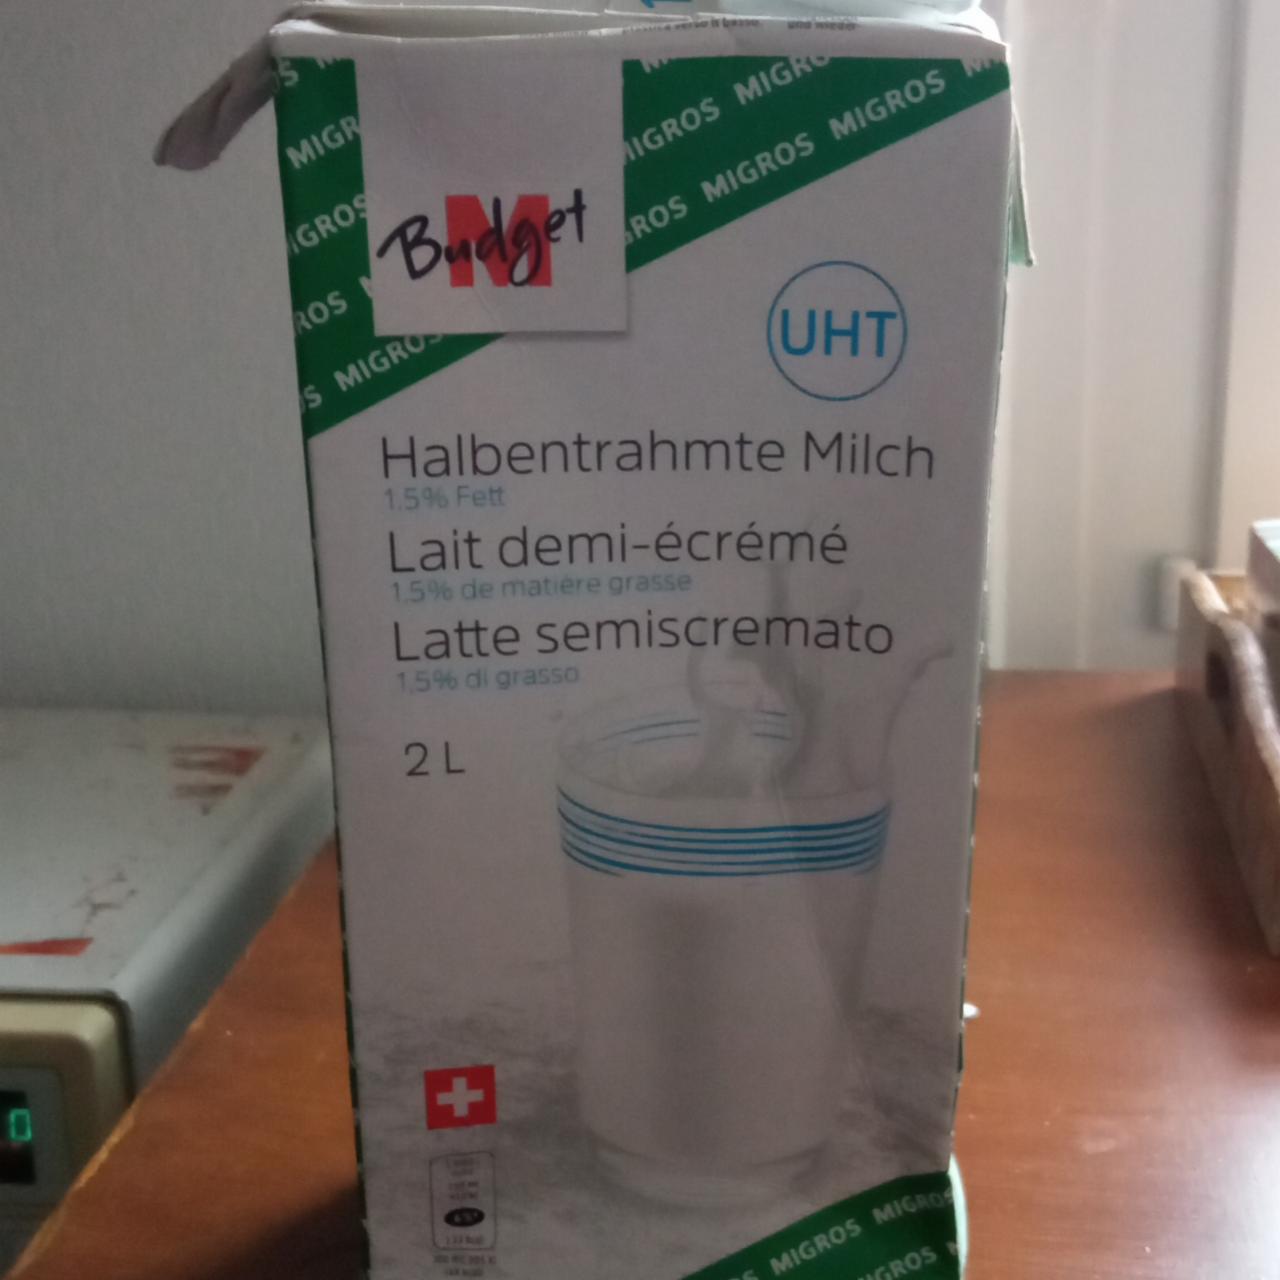 Фото - Молоко 1.5% Halbentrahmte Milch M-Budget